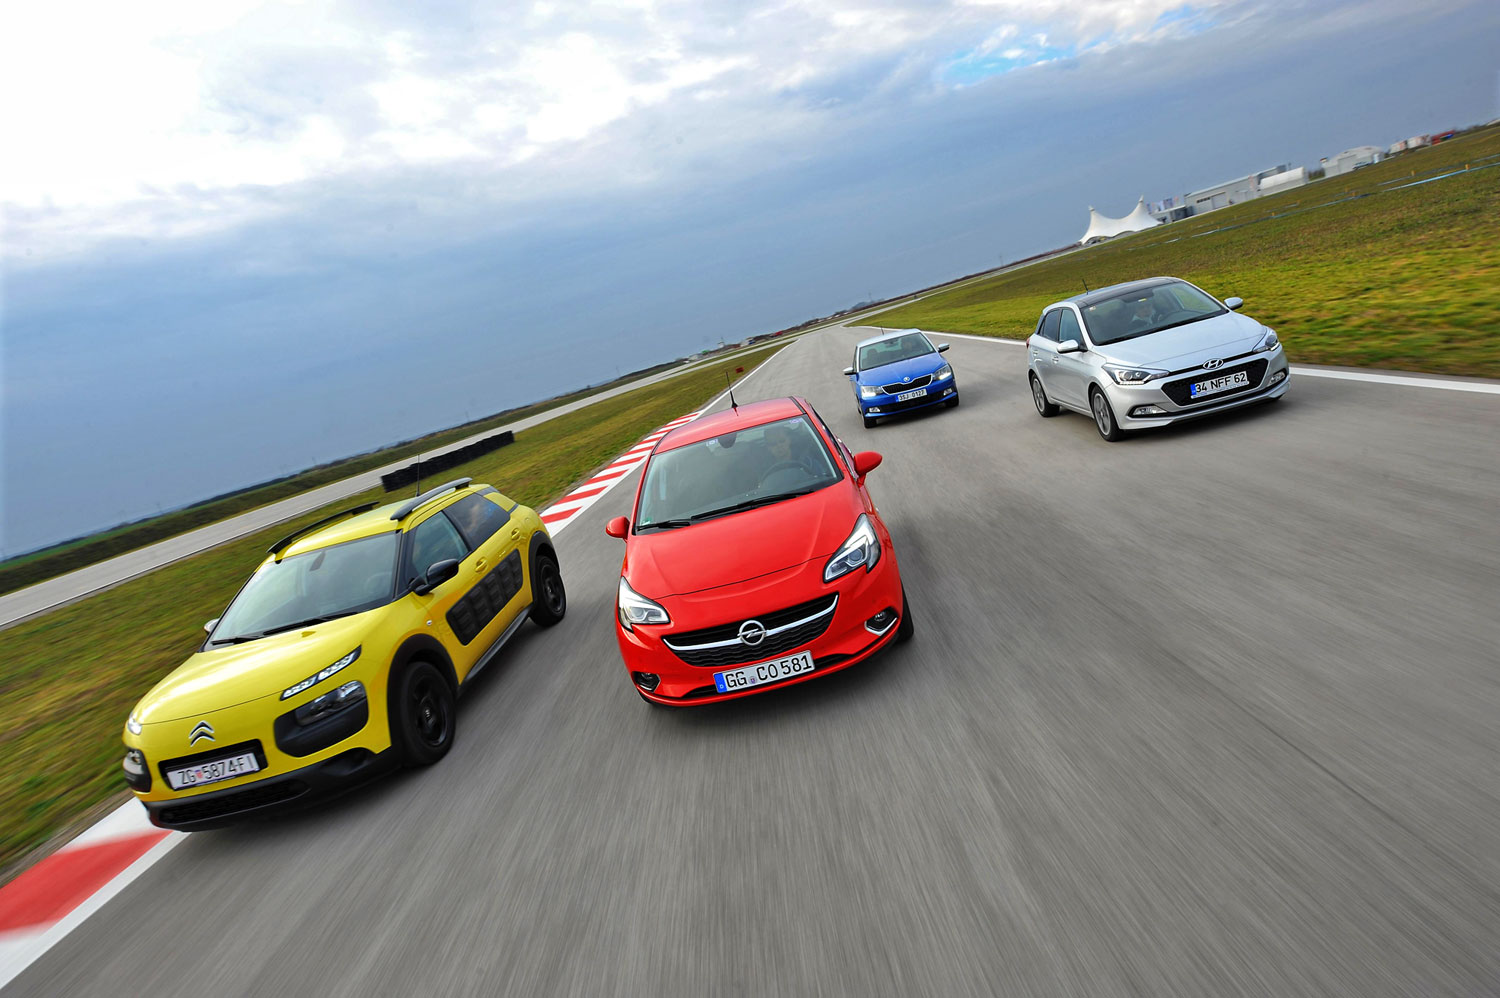 Szerbiai utakon és a NAVAK pályán lehetett nyúzni a kocsikat: Citroën C4 Cactus, a győztes Opel Corsa, Skoda Fabia és a Hyundai i20-as